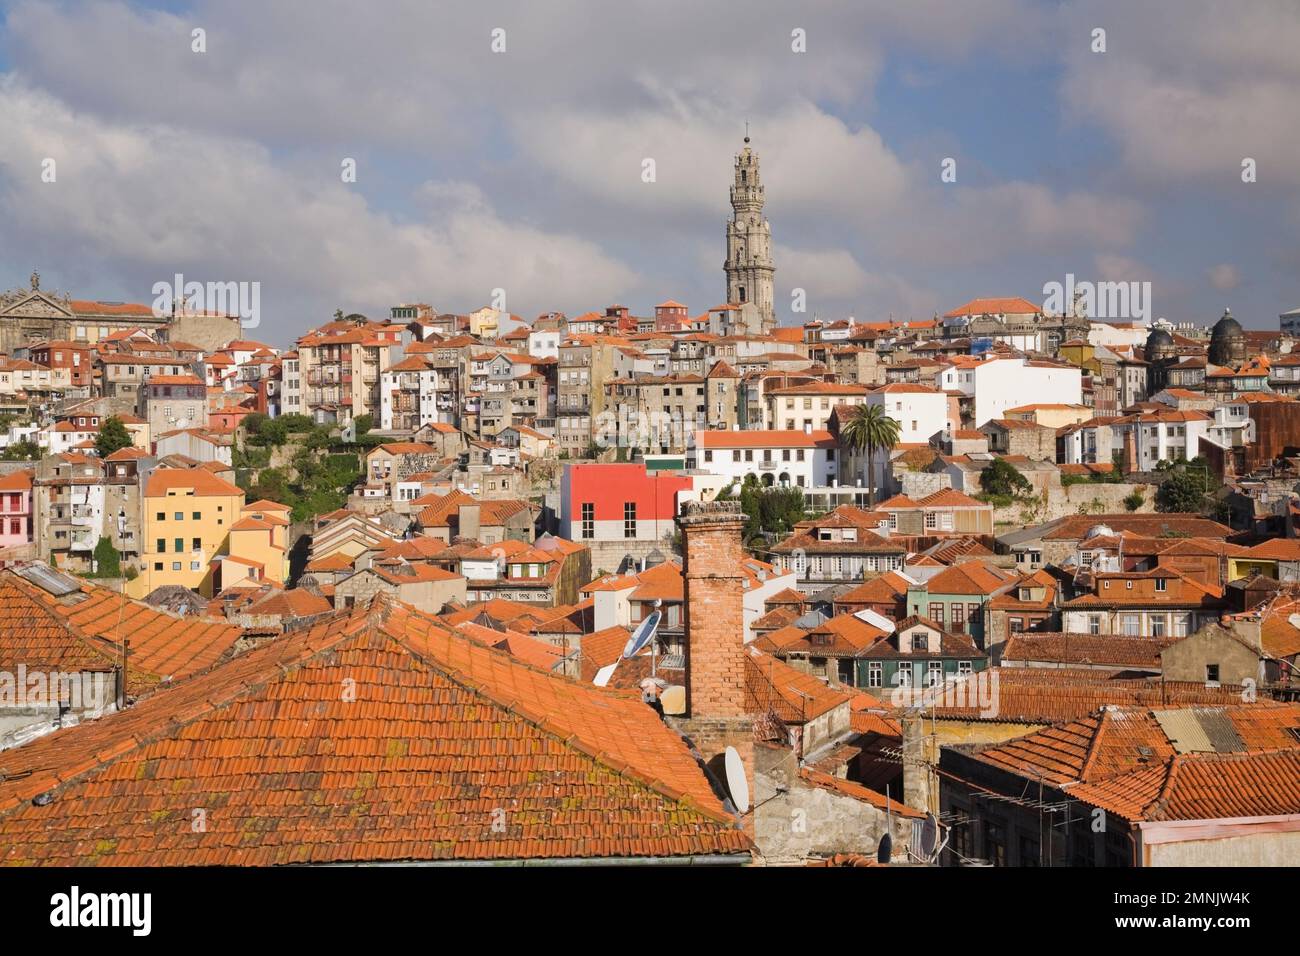 Lo skyline della città vecchia di Porto con il campanile della chiesa, Porto, Portogallo. Foto Stock